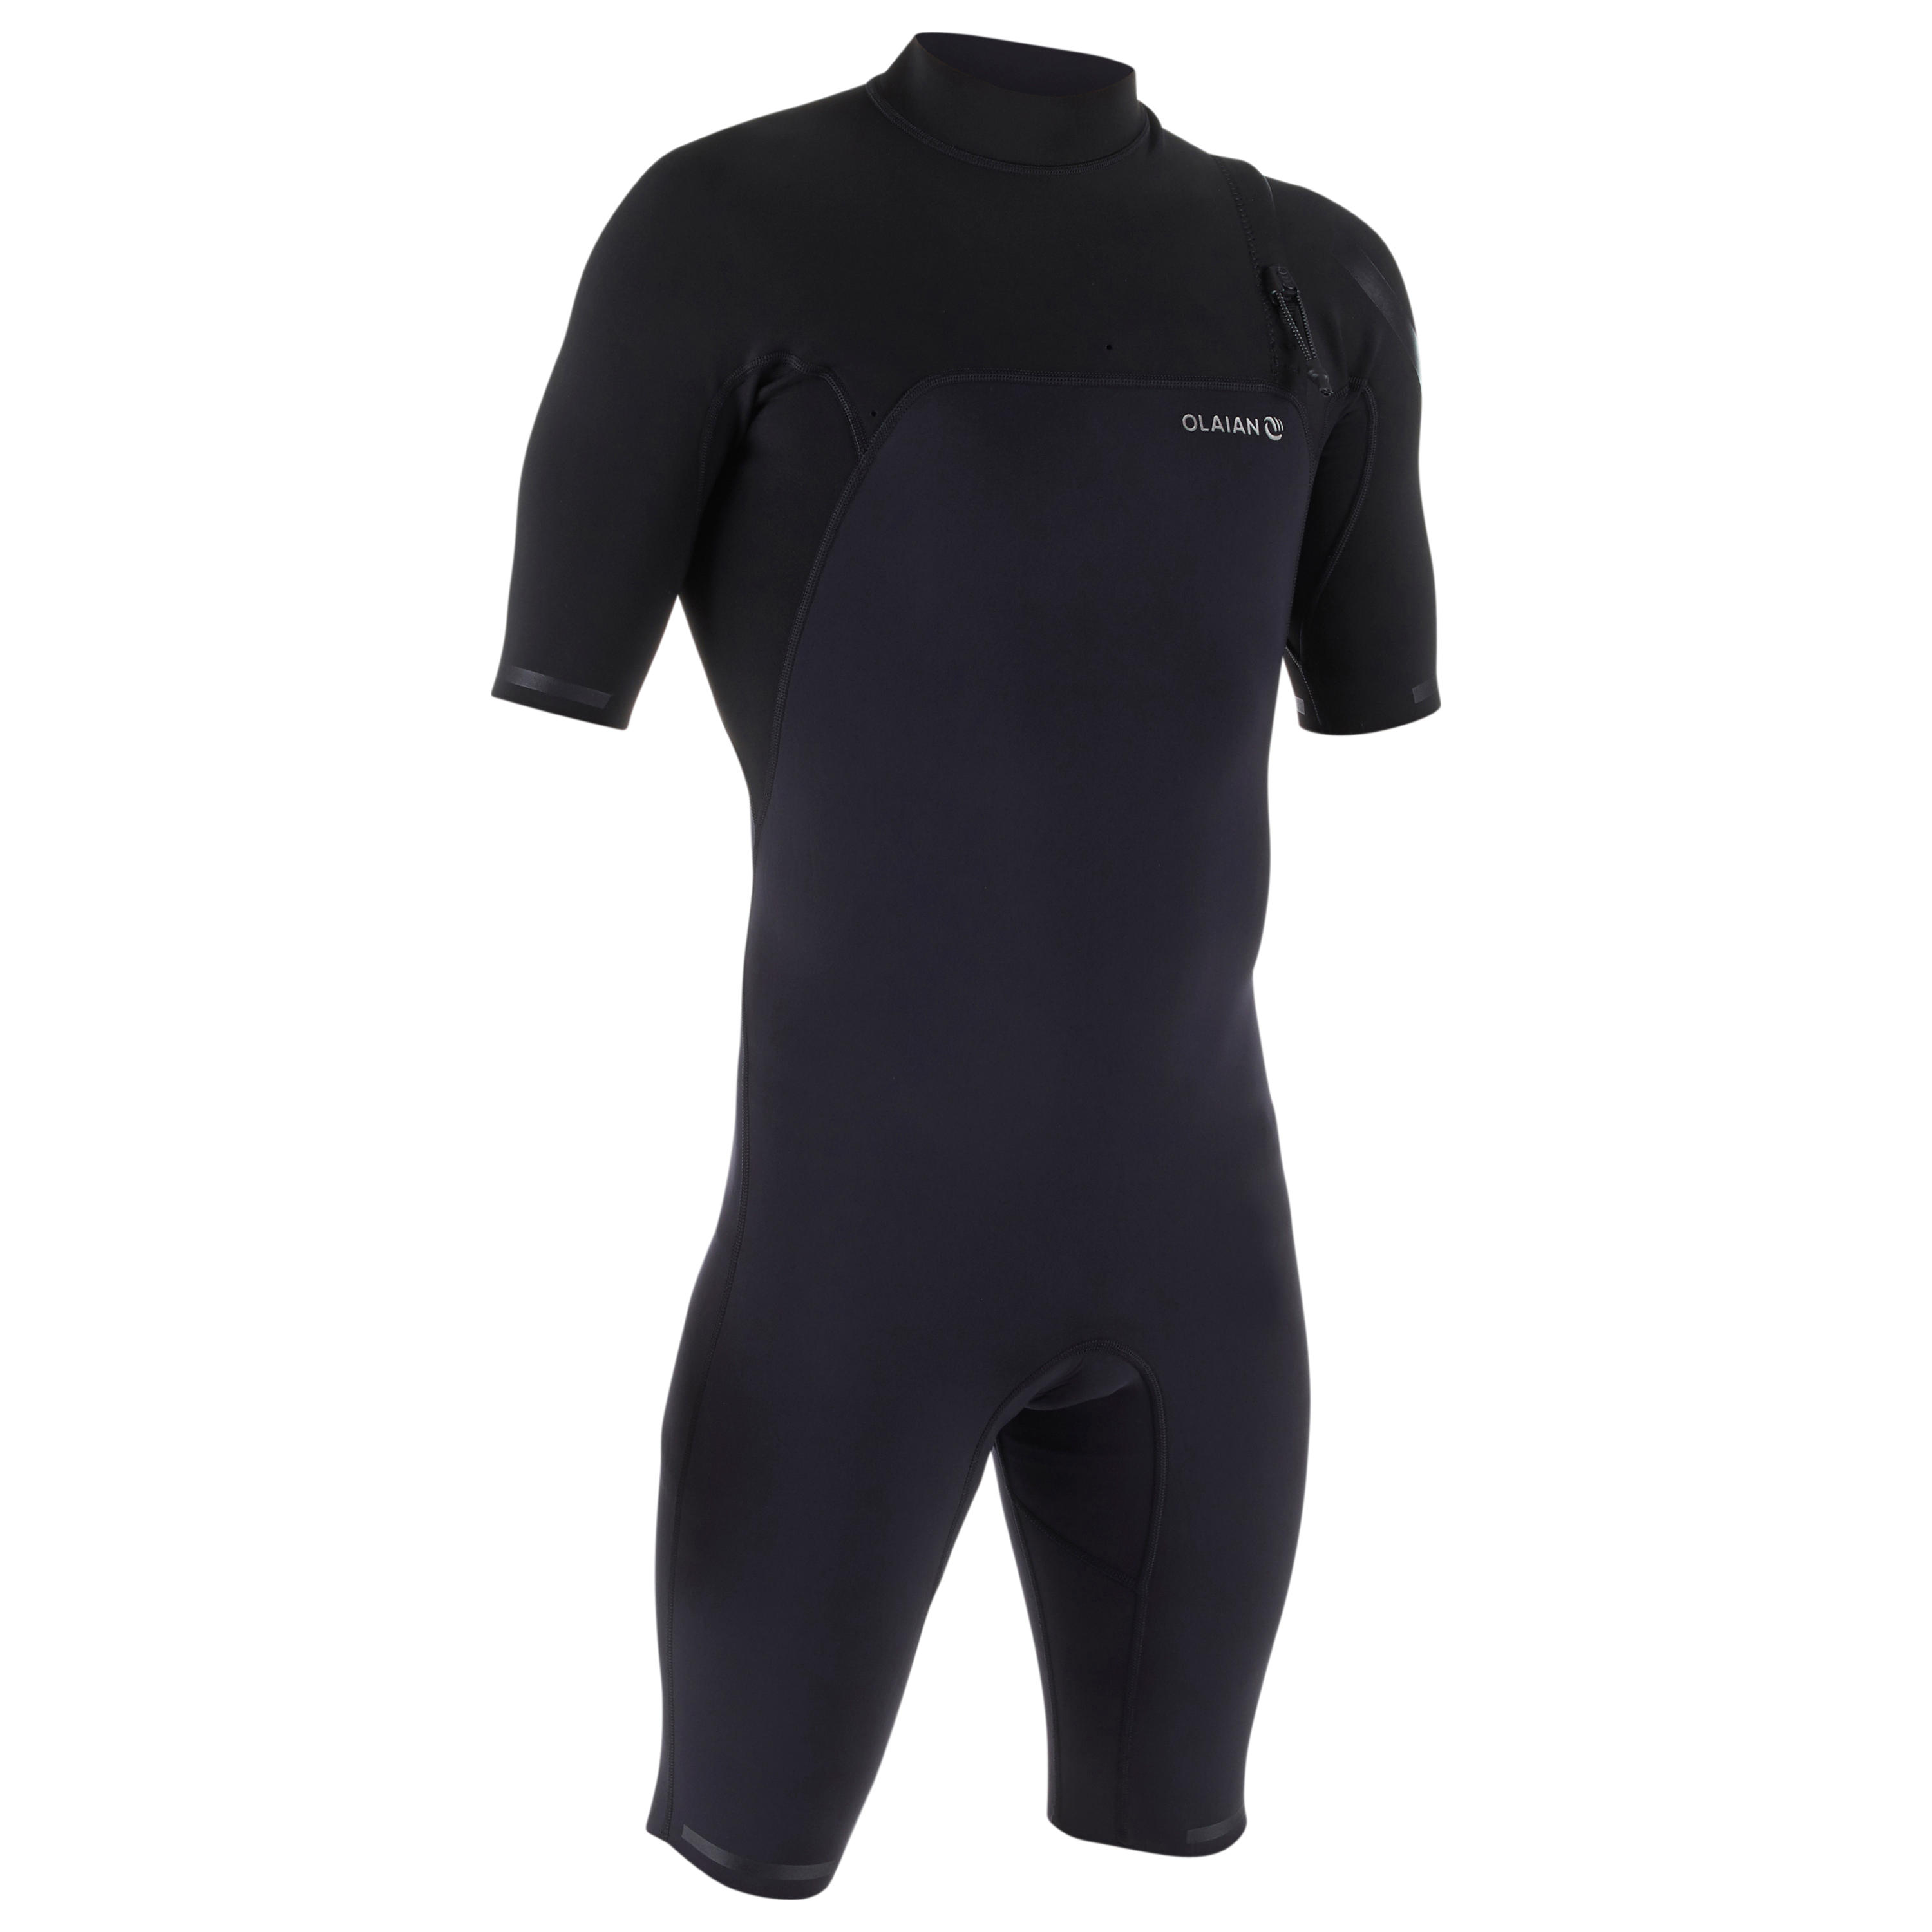 OLAIAN Men's surfing neoprene short-sleeved no zip shorty wetsuit 900 - Black